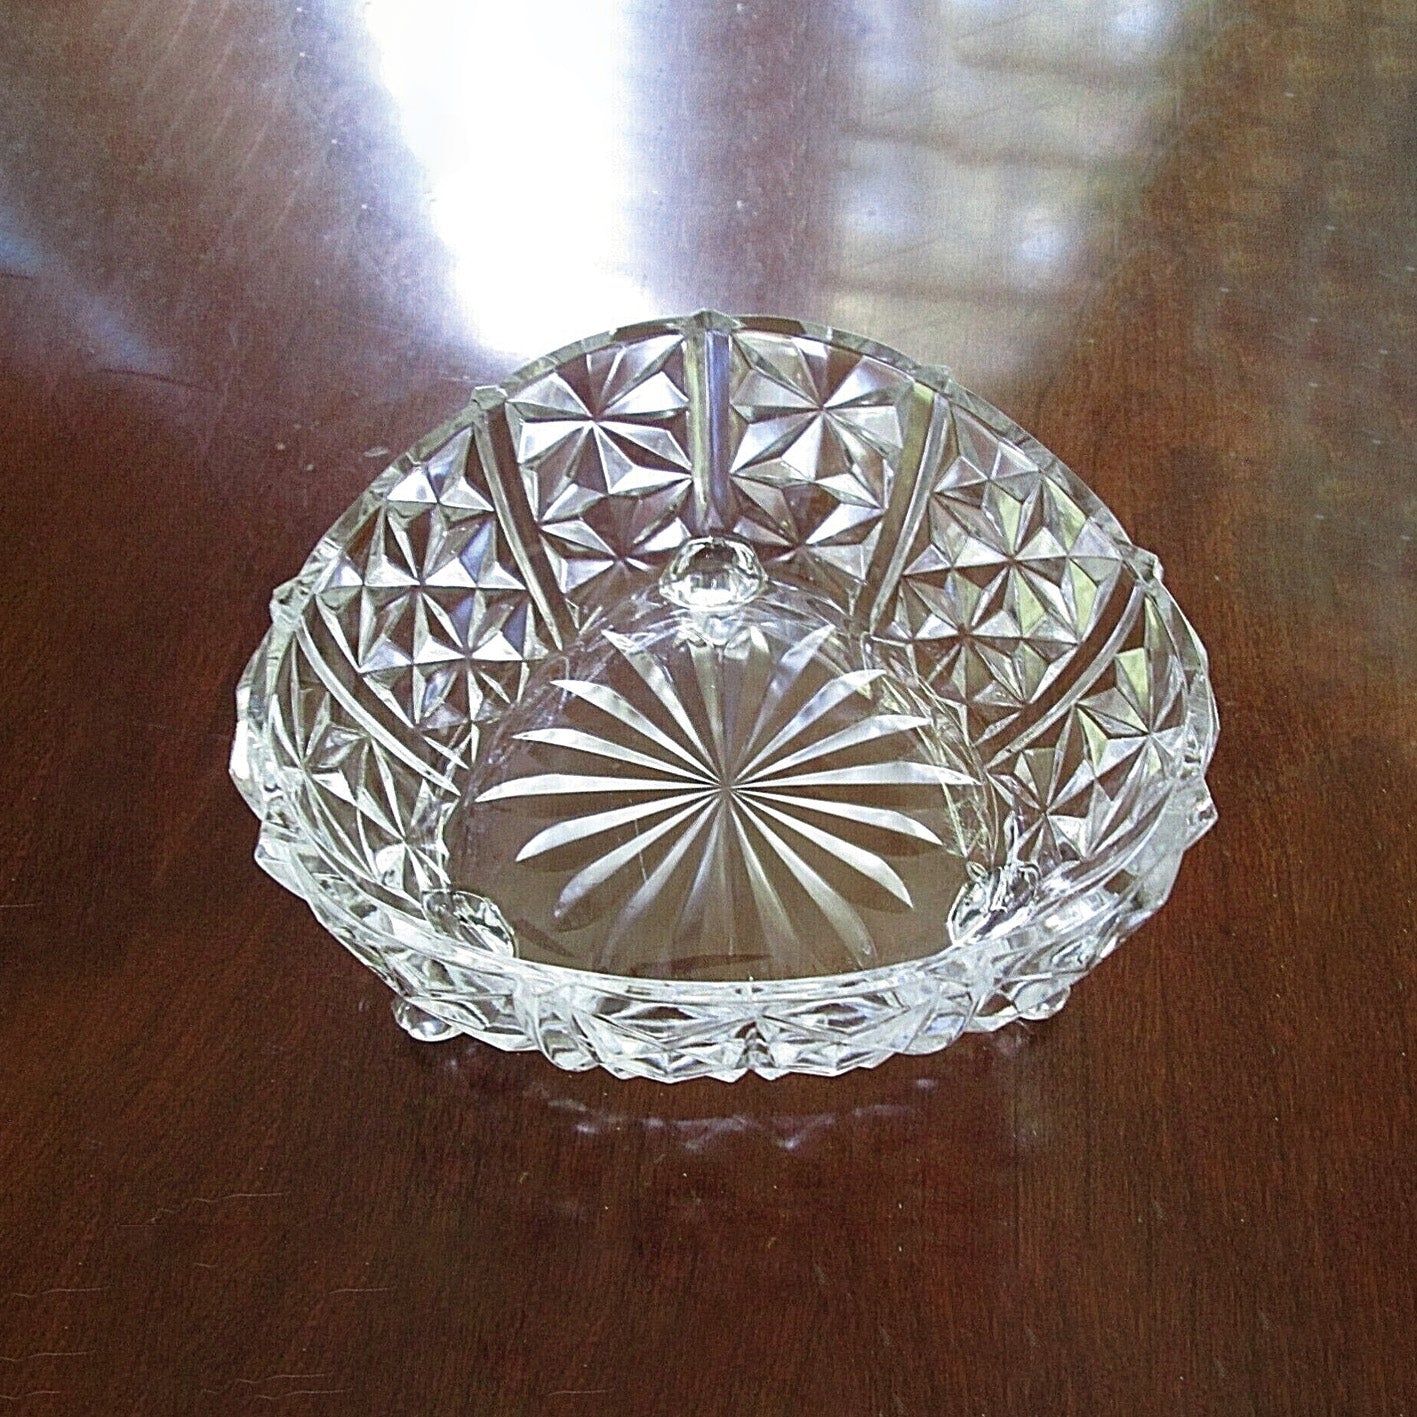 Glass fruit bowl (6pcs) 5" - W13205/6KG